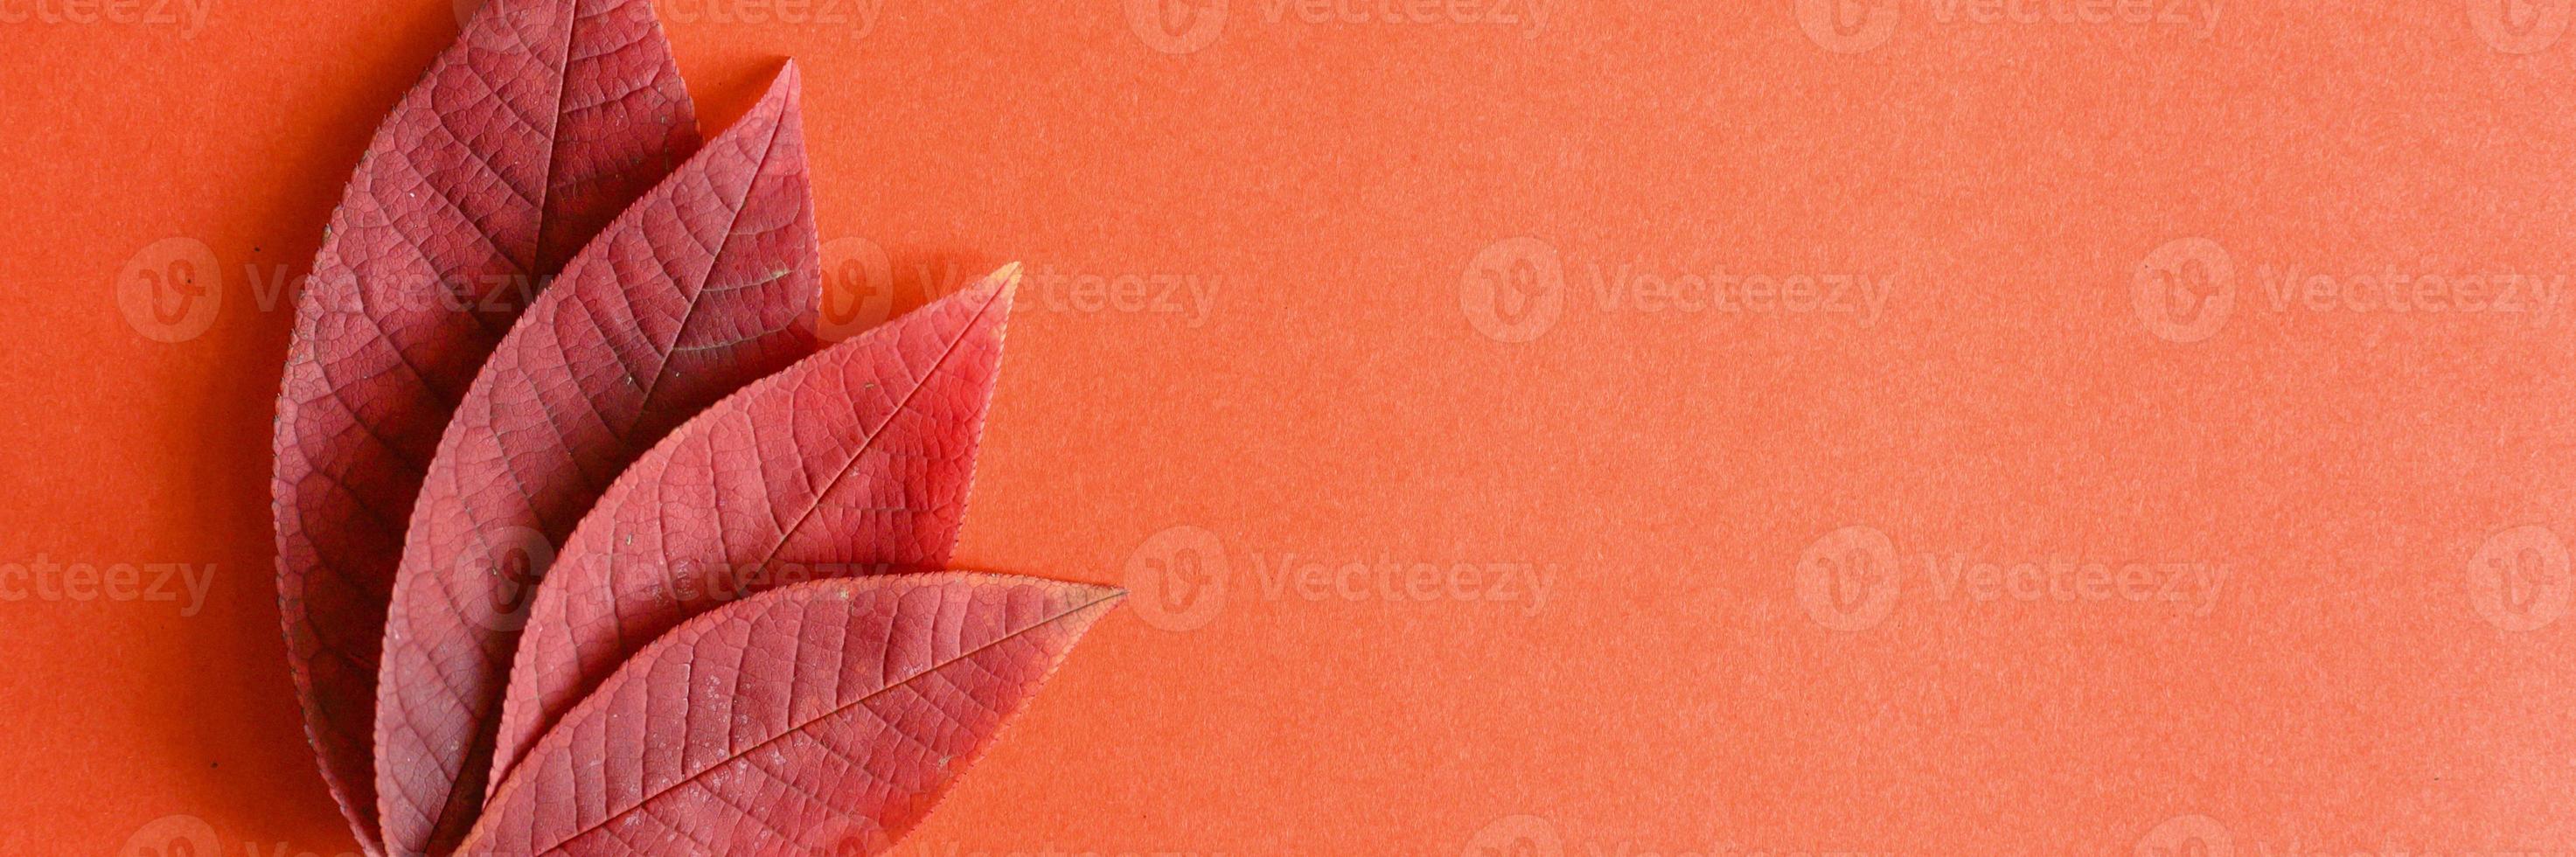 Feuilles de cerisier d'automne tombées rouges sur fond de papier rouge photo